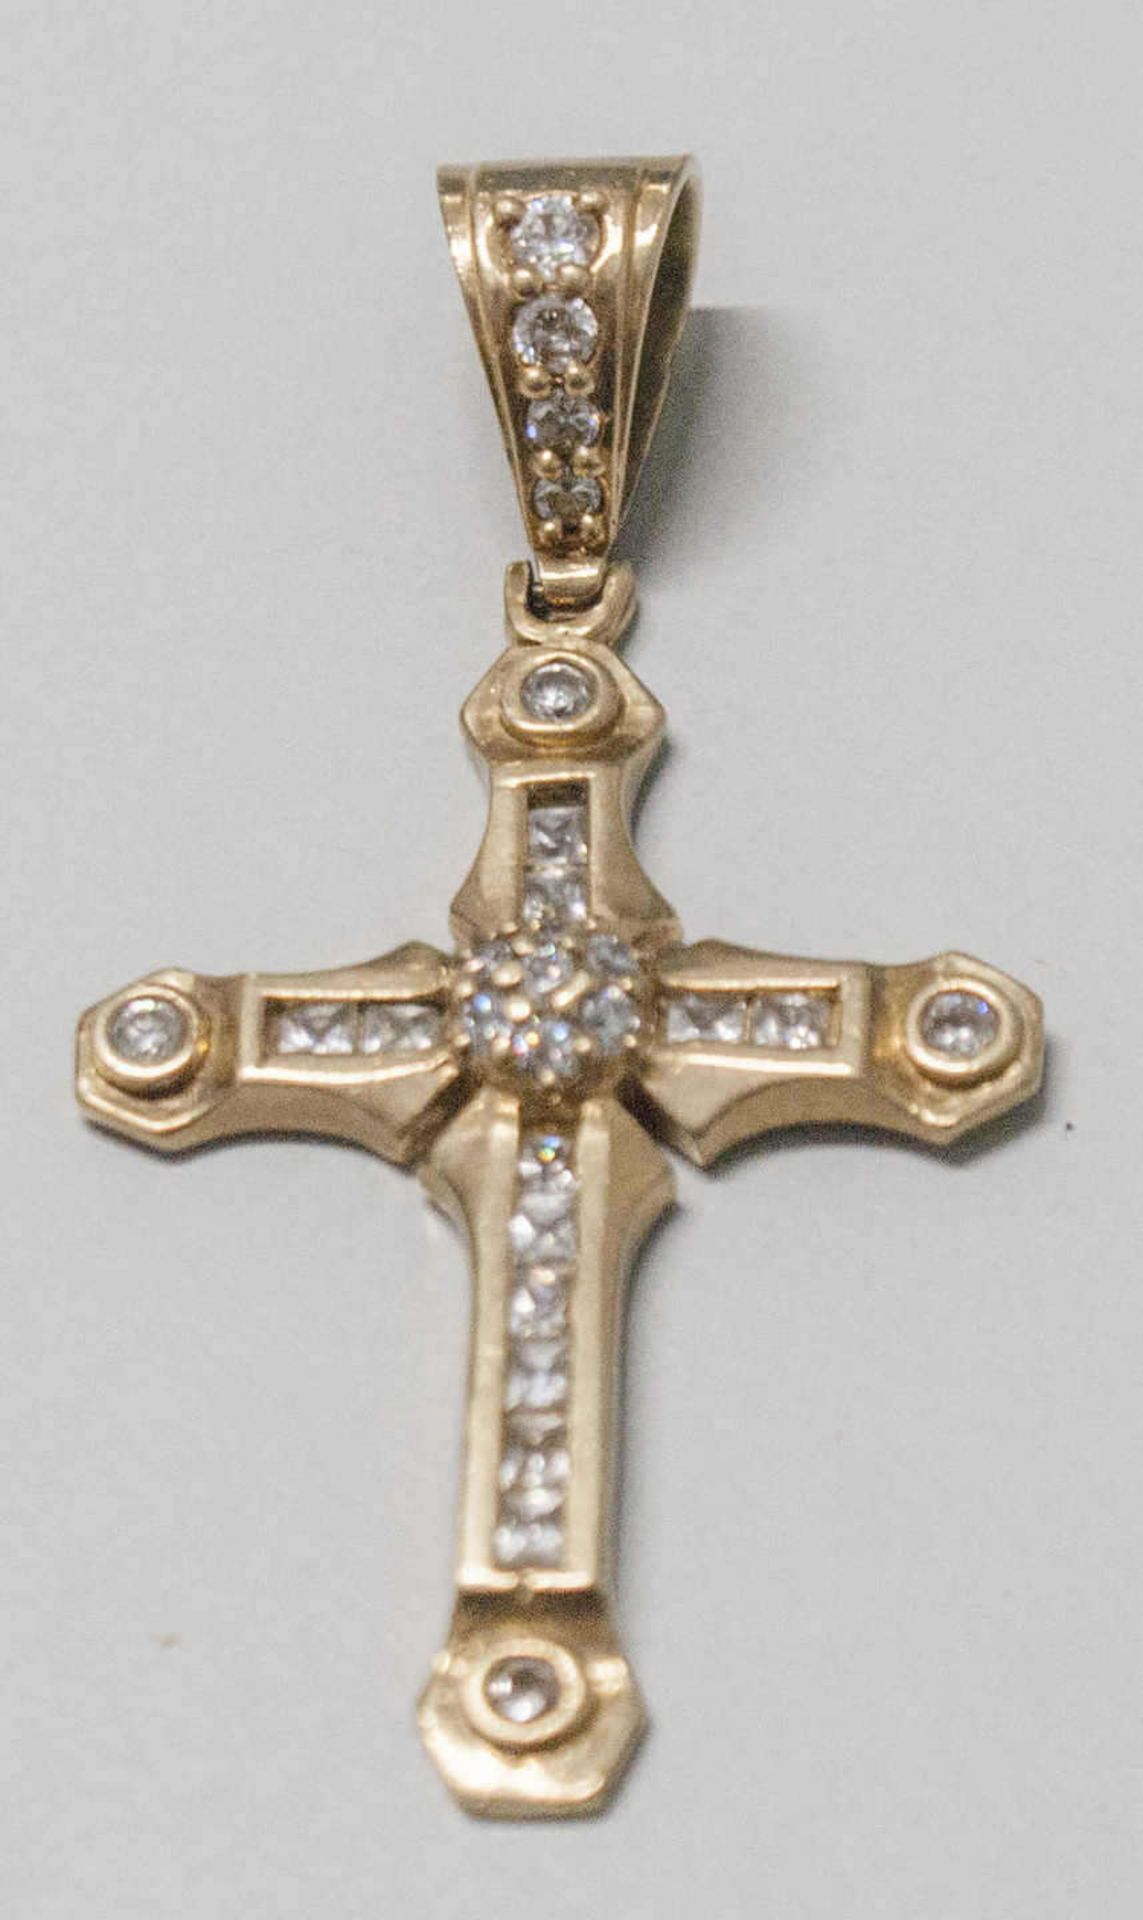 Anhänger "Kreuz", 10 K Gelbgold (417er), besetzt mit zahlreichen Zirkonia. Länge ca 6,5cm, Gewicht